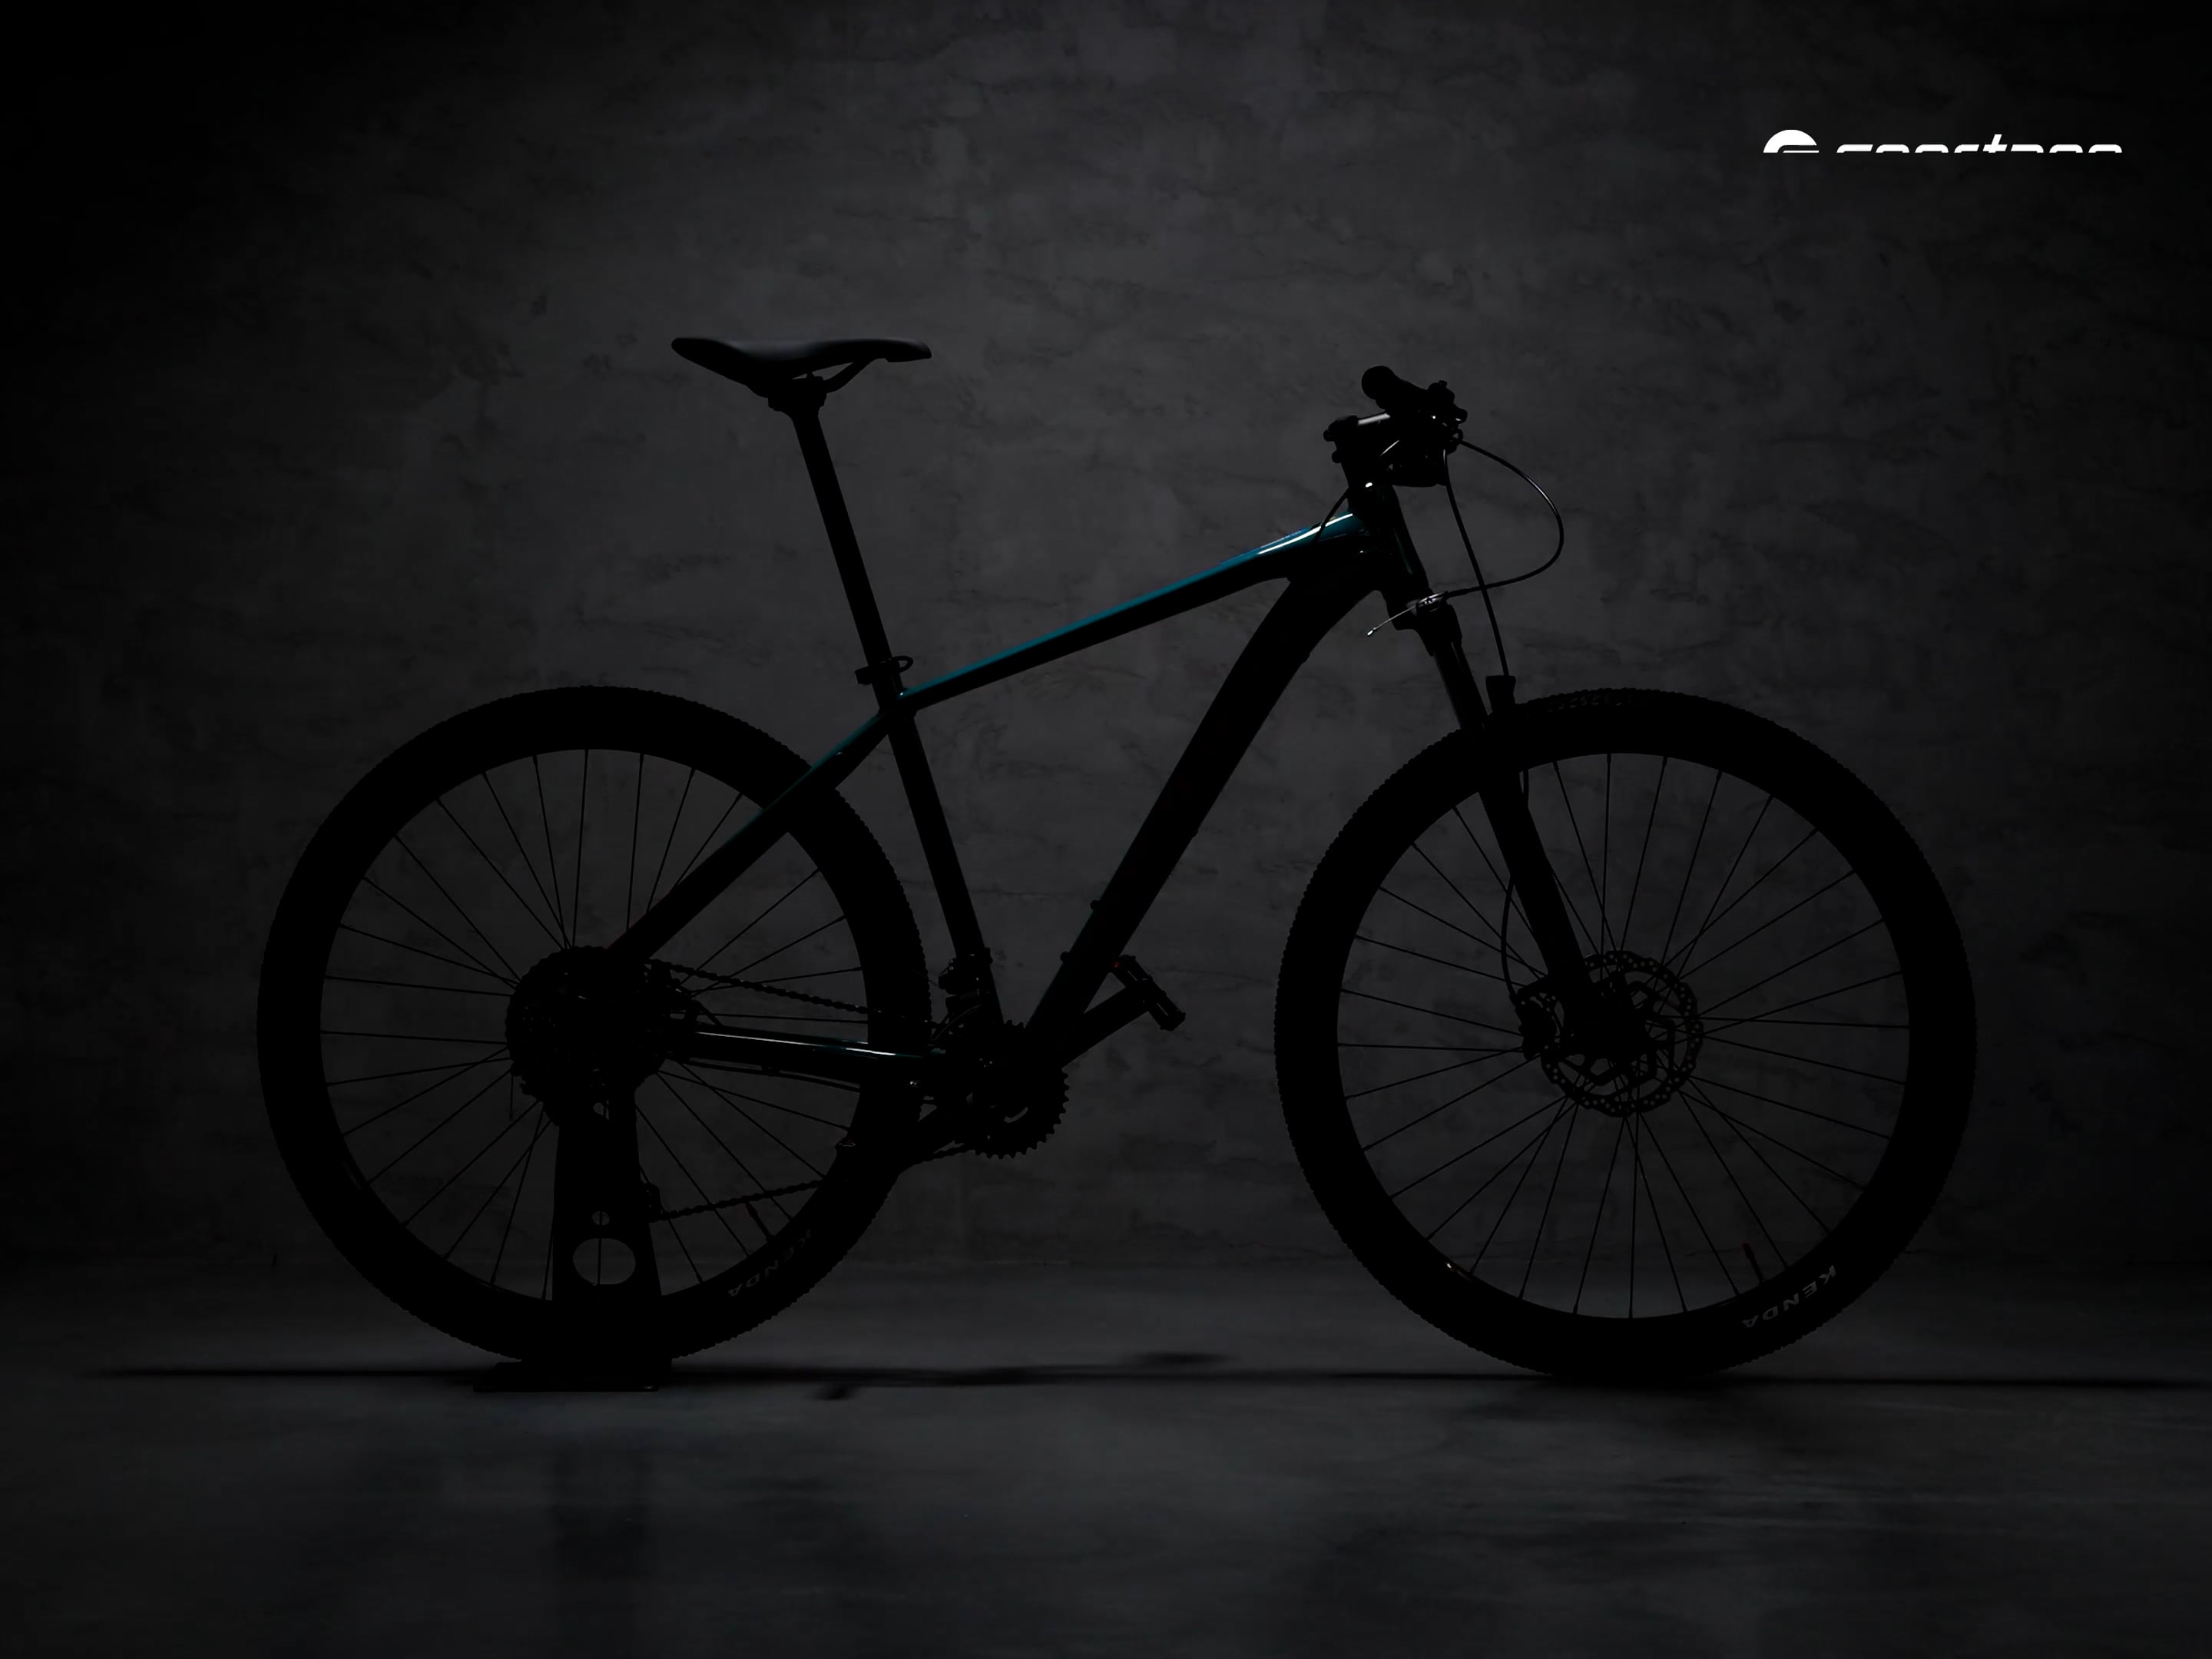 Orbea MX 29 40 kék hegyi kerékpár